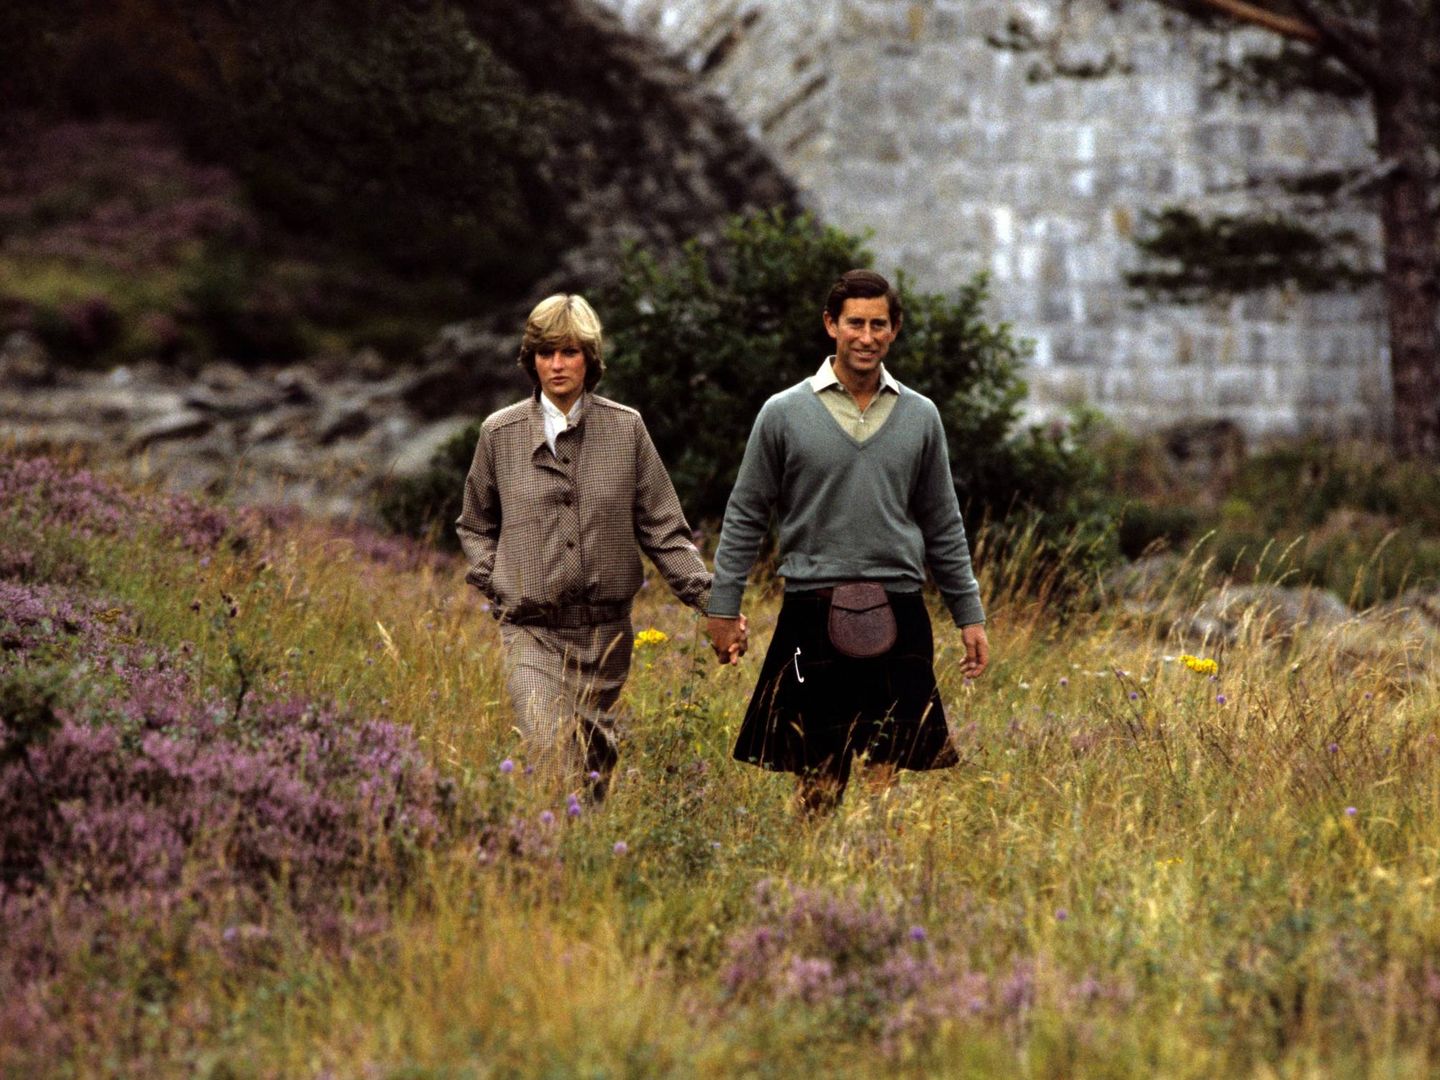  Diana y Carlos paseando por Balmoral. (Cordon Press)